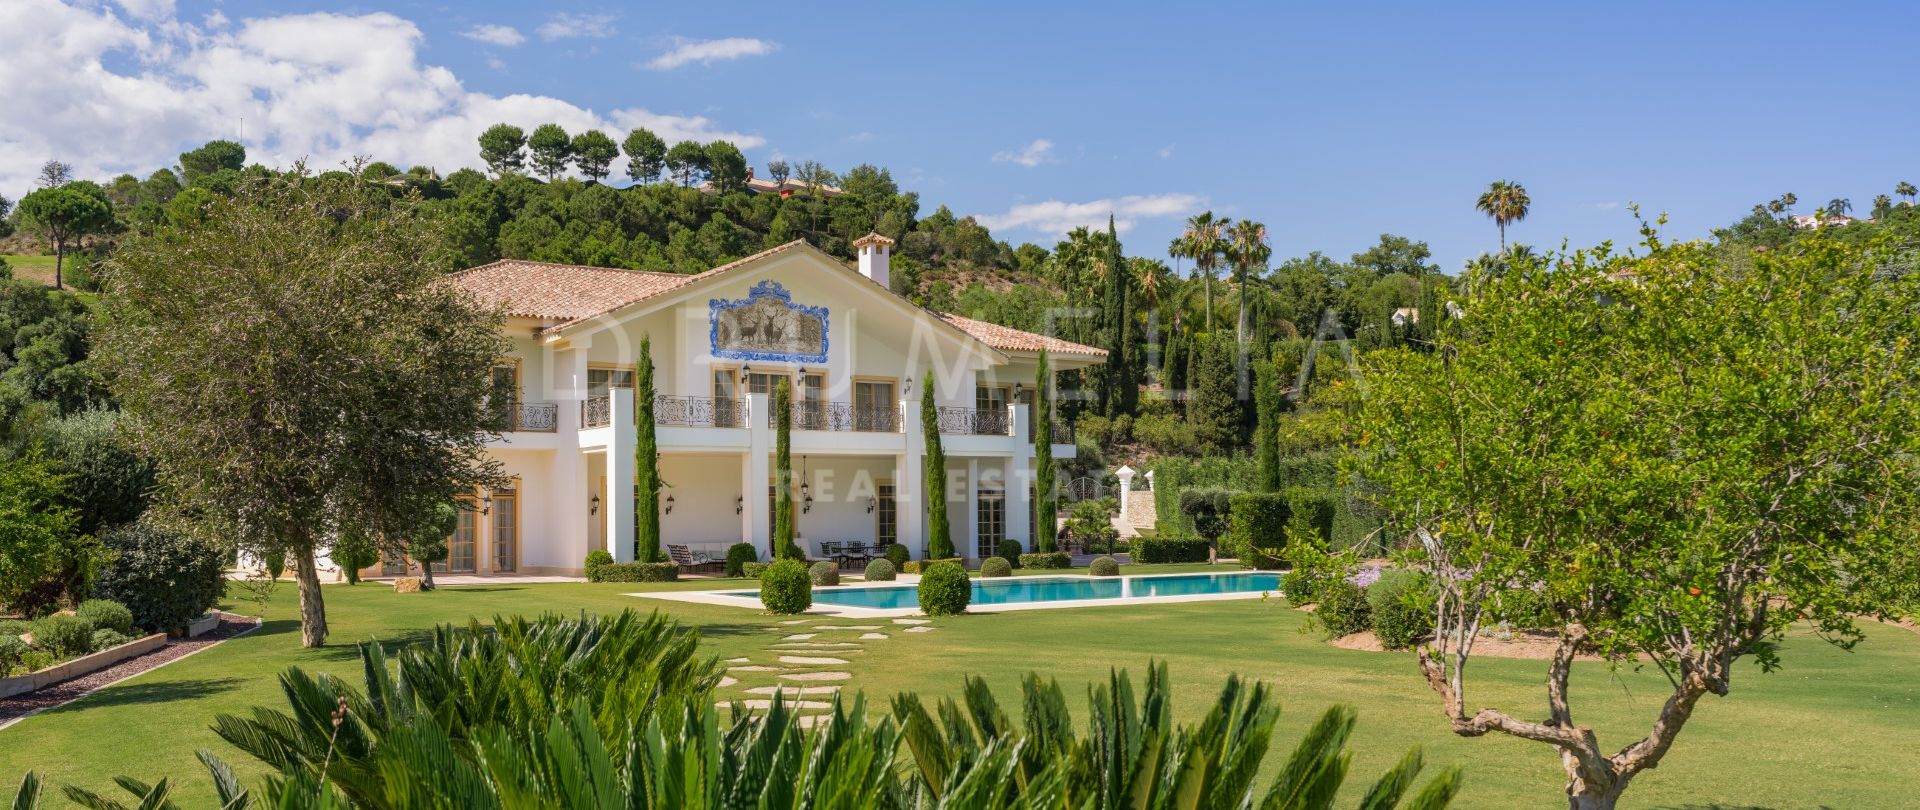 Prachtig herenhuis in mediterrane stijl voor luxueus wonen in het luxe La Zagaleta, Benahavis.